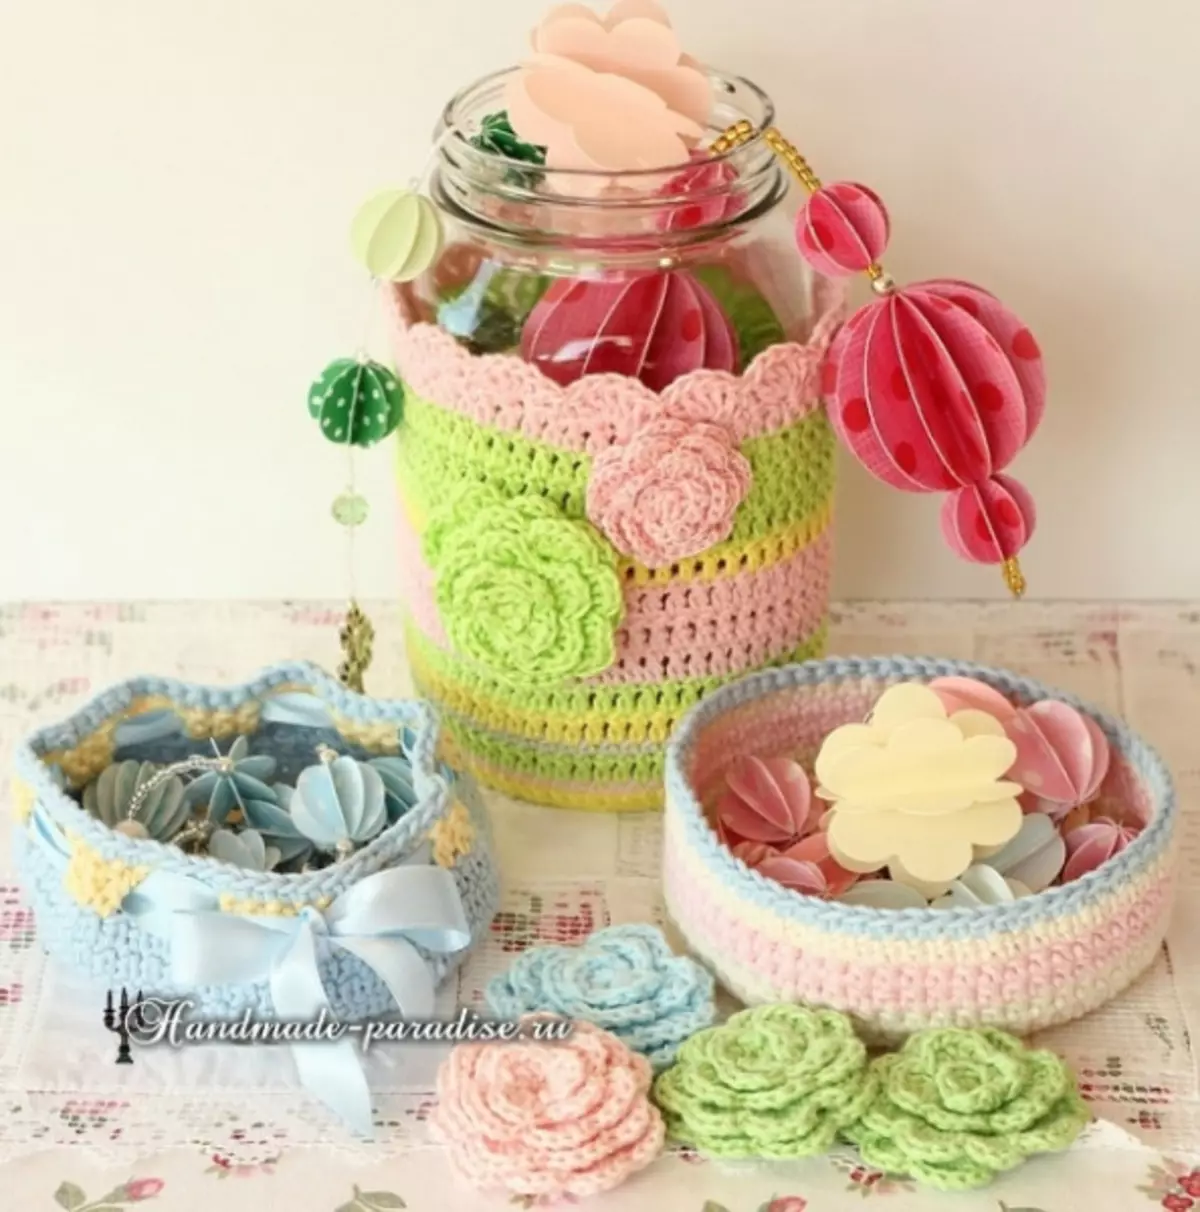 Baskets Crochet. Knitting schemes